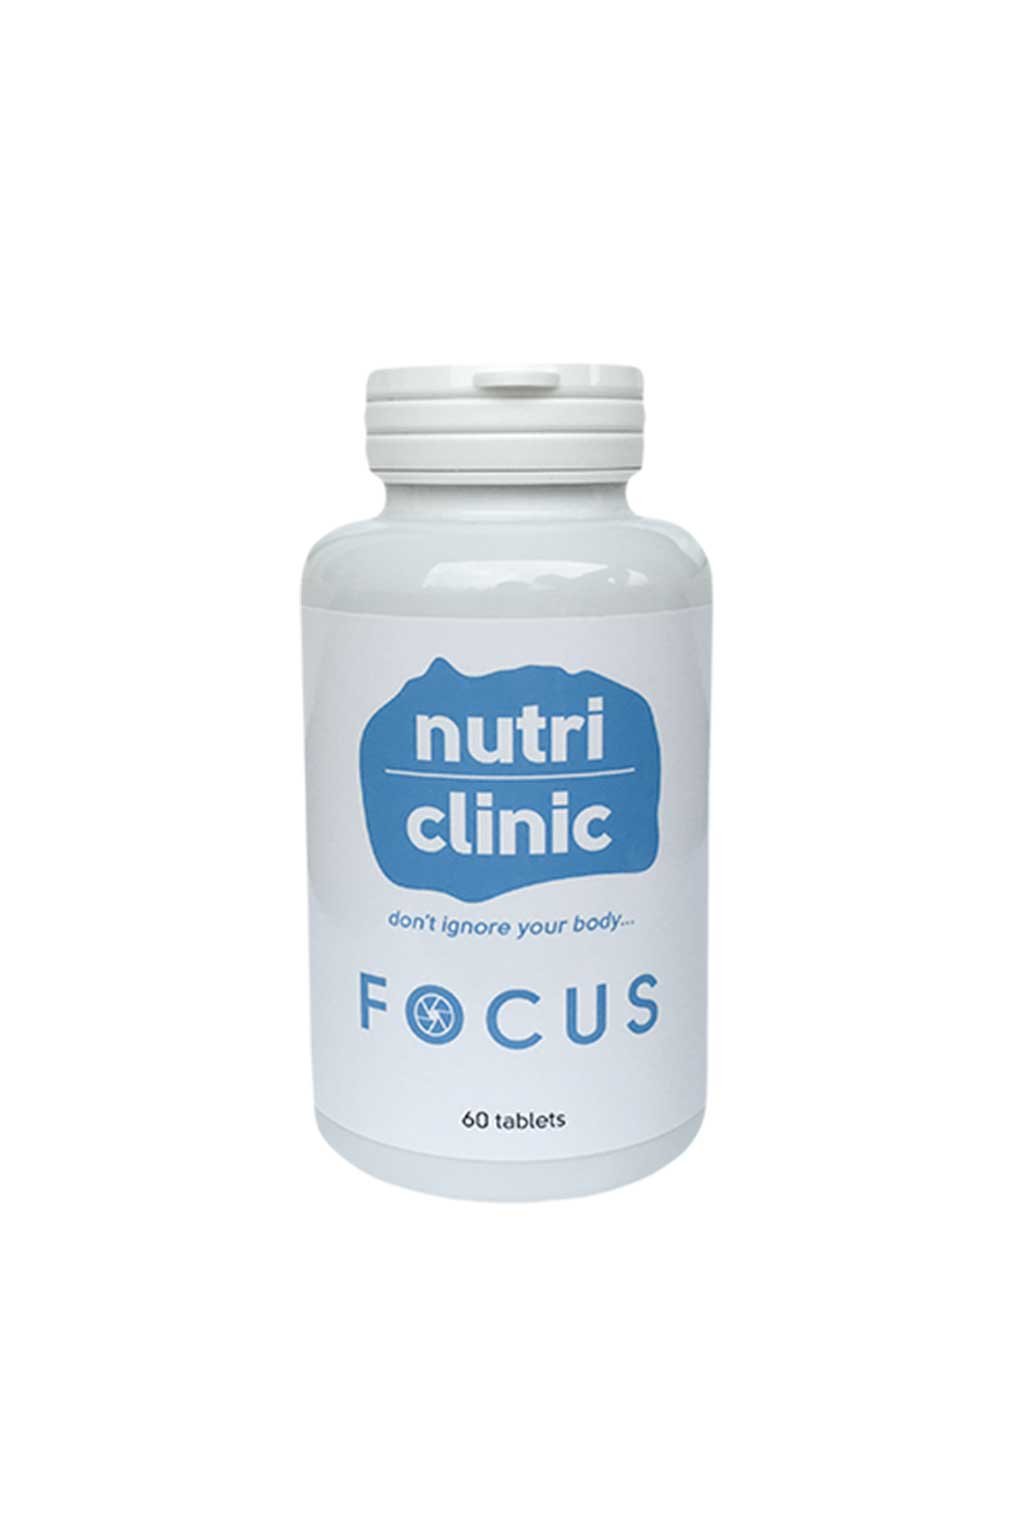 Nutri clinic focus